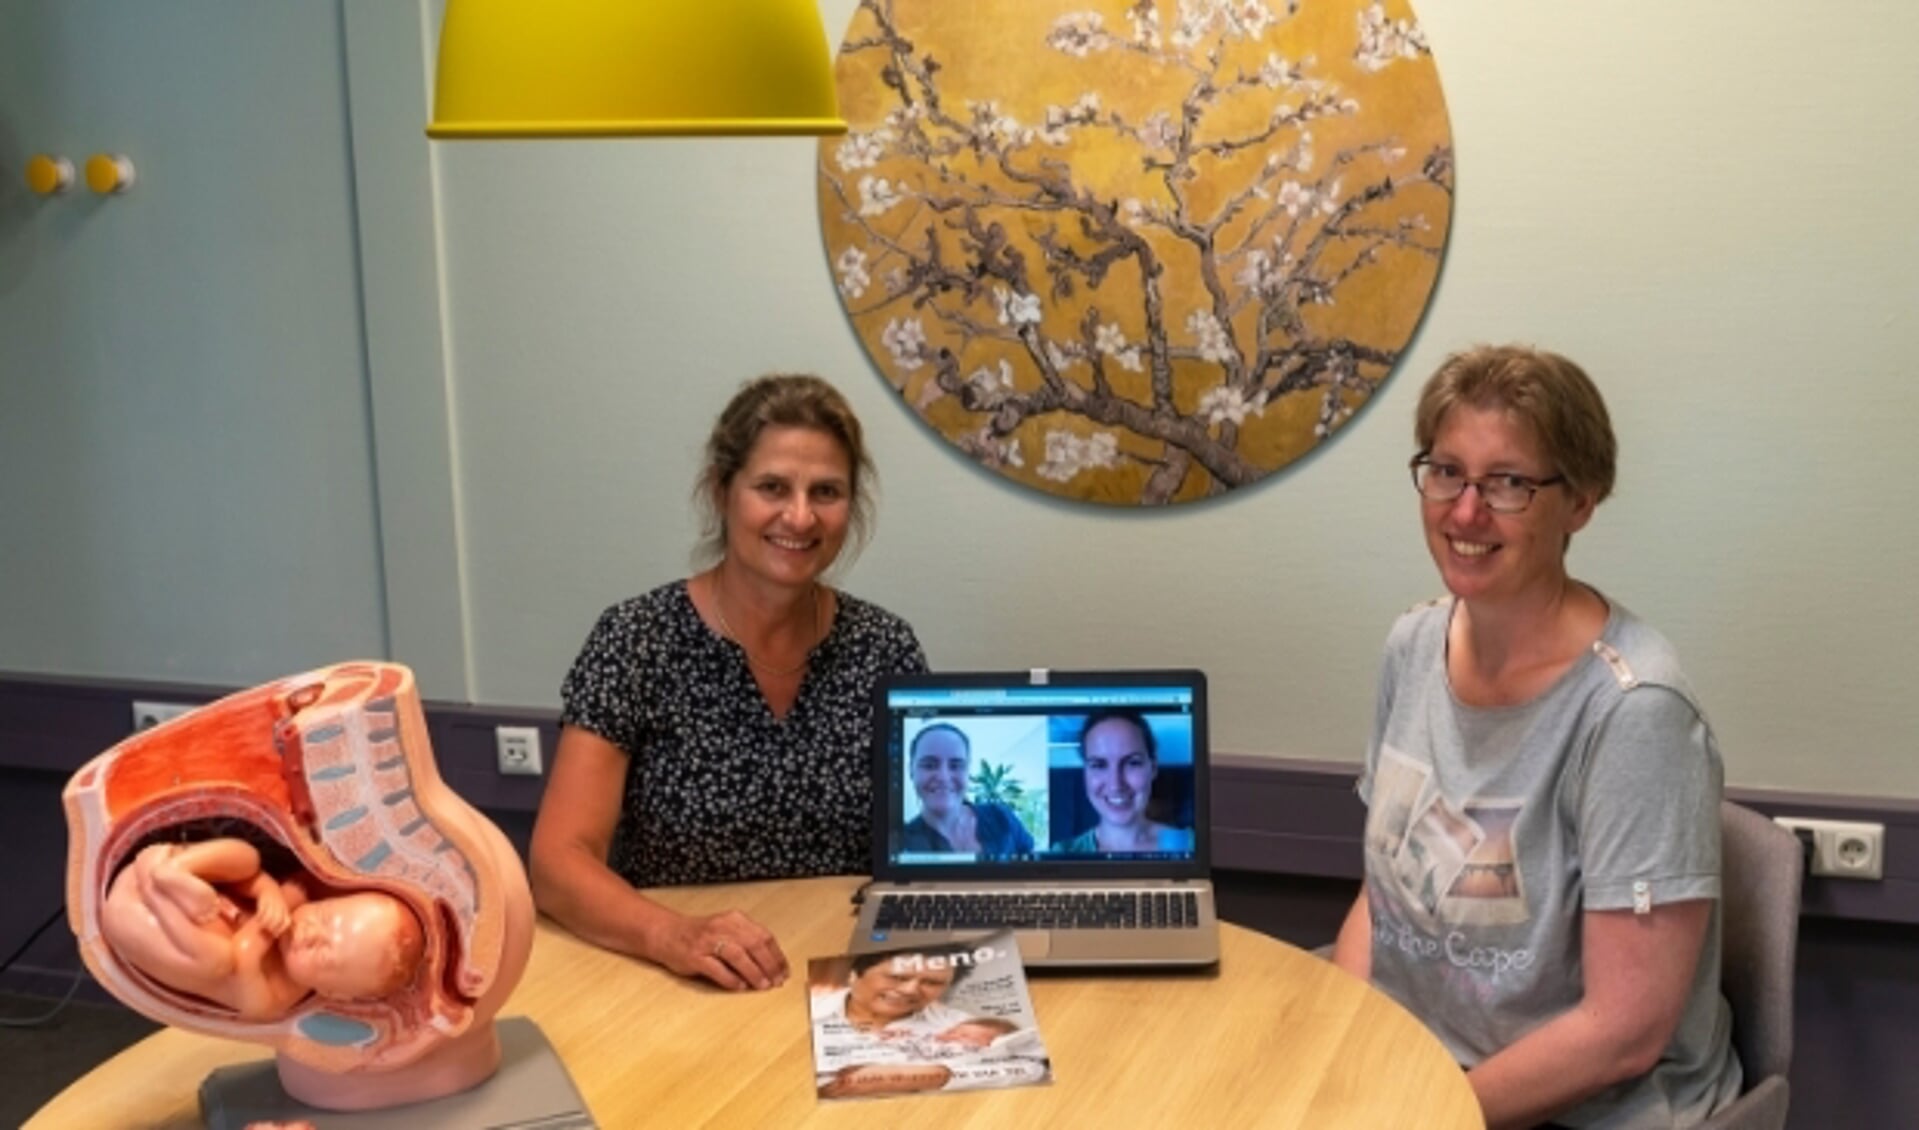 Verloskundigen Brigit Schoemaker en Irene Plancius met op de laptop Bianca Schöne en Lieve Geelen van Verloskundigen Centrum Meno